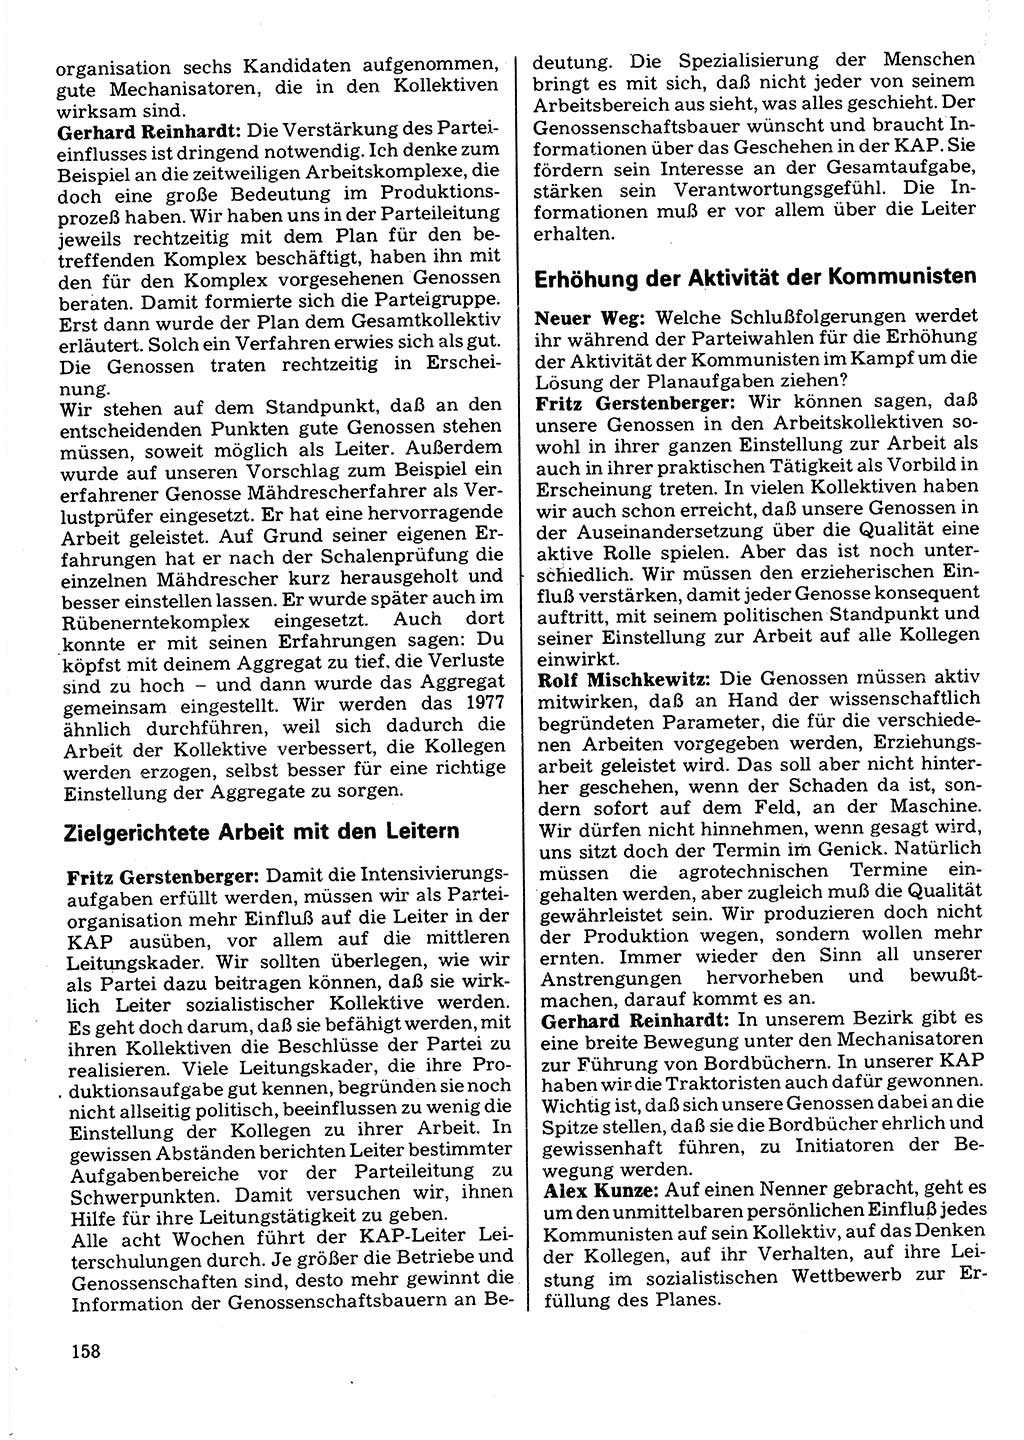 Neuer Weg (NW), Organ des Zentralkomitees (ZK) der SED (Sozialistische Einheitspartei Deutschlands) für Fragen des Parteilebens, 32. Jahrgang [Deutsche Demokratische Republik (DDR)] 1977, Seite 158 (NW ZK SED DDR 1977, S. 158)